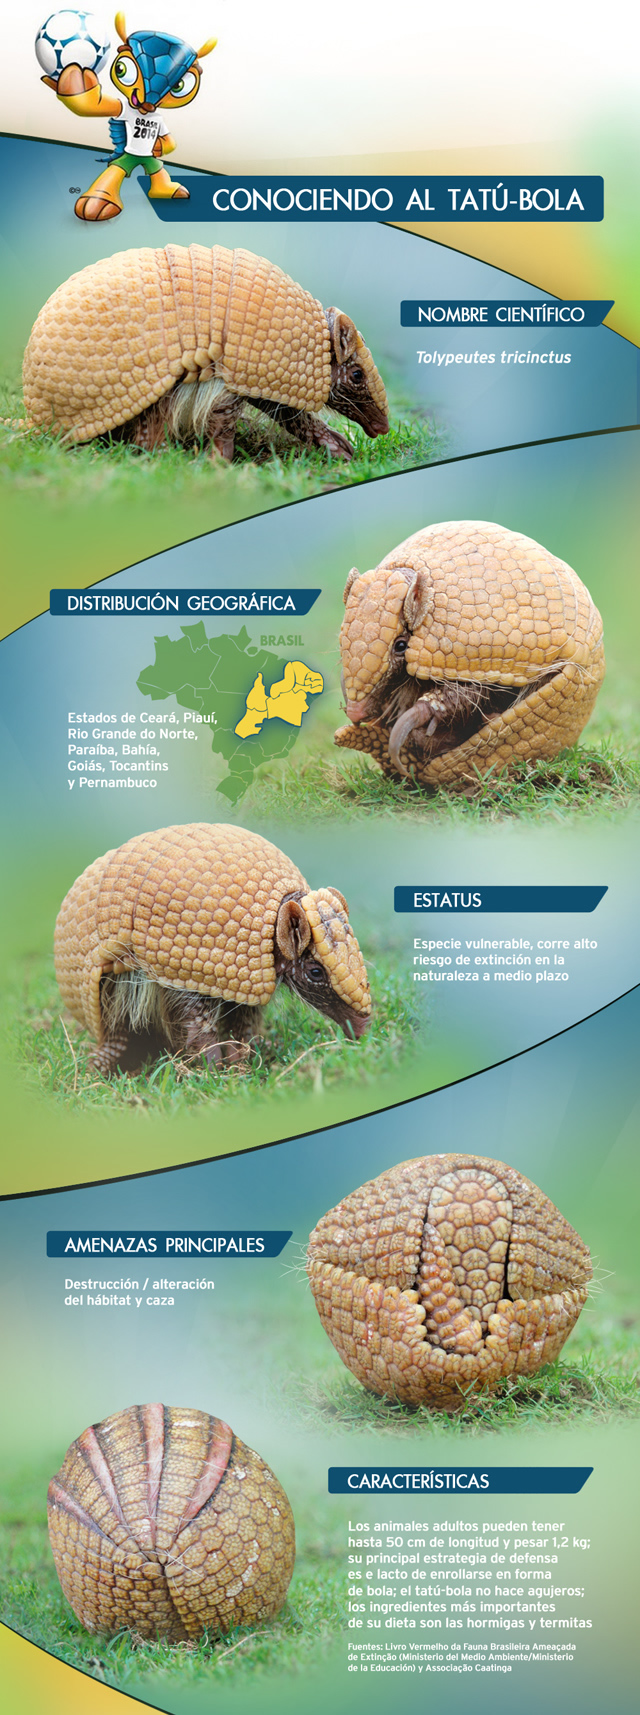 Conociendo al tatú bola (Tolypeutes tricinctus) especie que inspiró a Fuleco / Infografía: Portal de la Copa